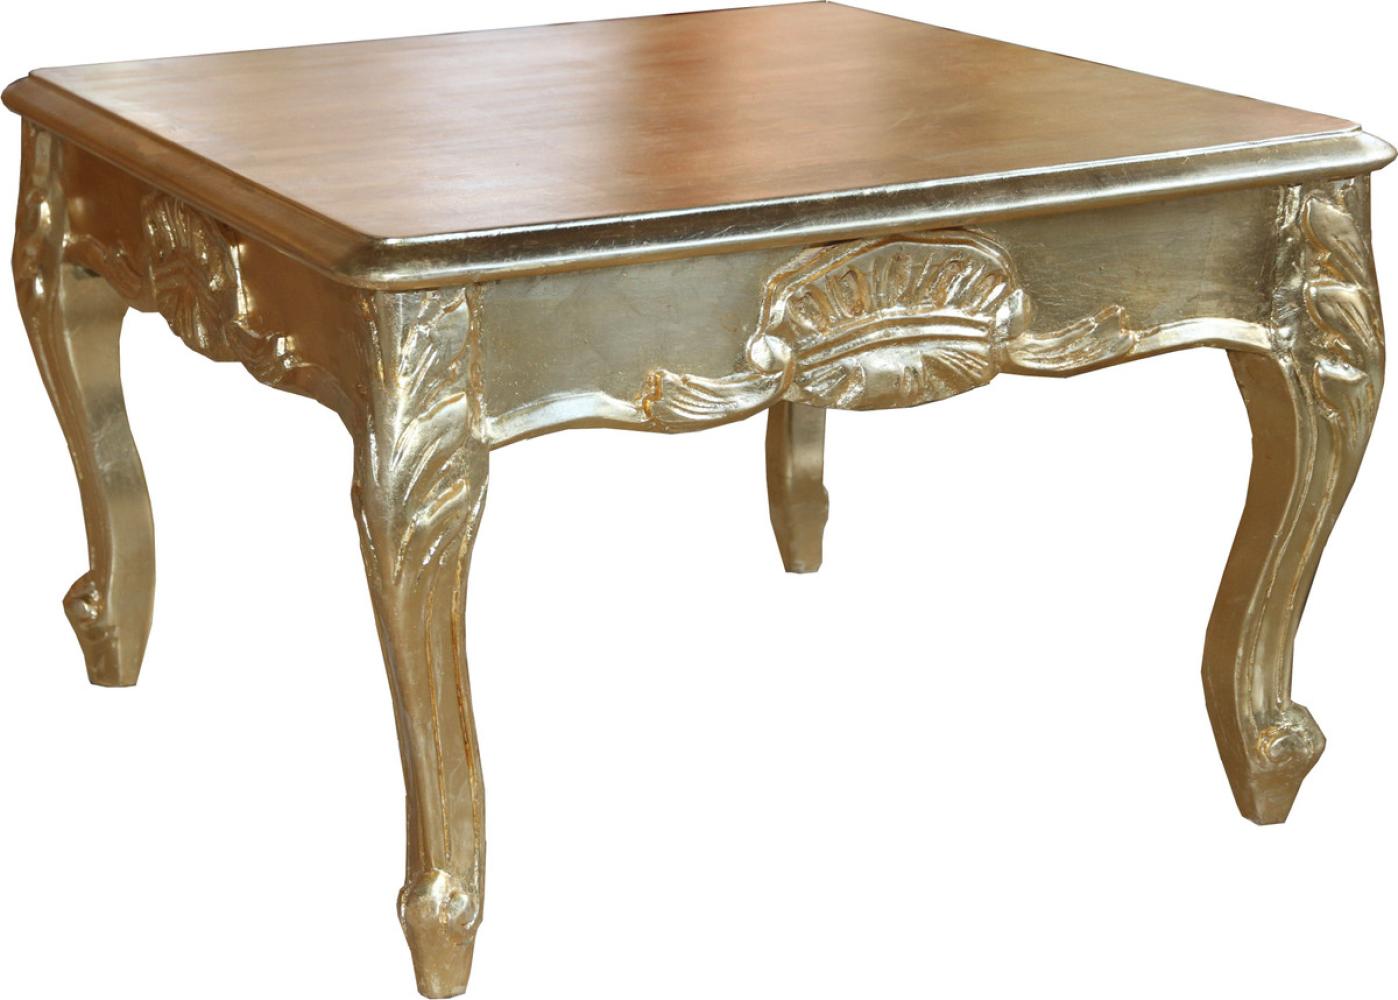 Casa Padrino Barock Beistelltisch Gold 60 x 60 cm - Couch Tisch - Wohnzimmer Tisch - Couchtisch - Limited Edition Bild 1